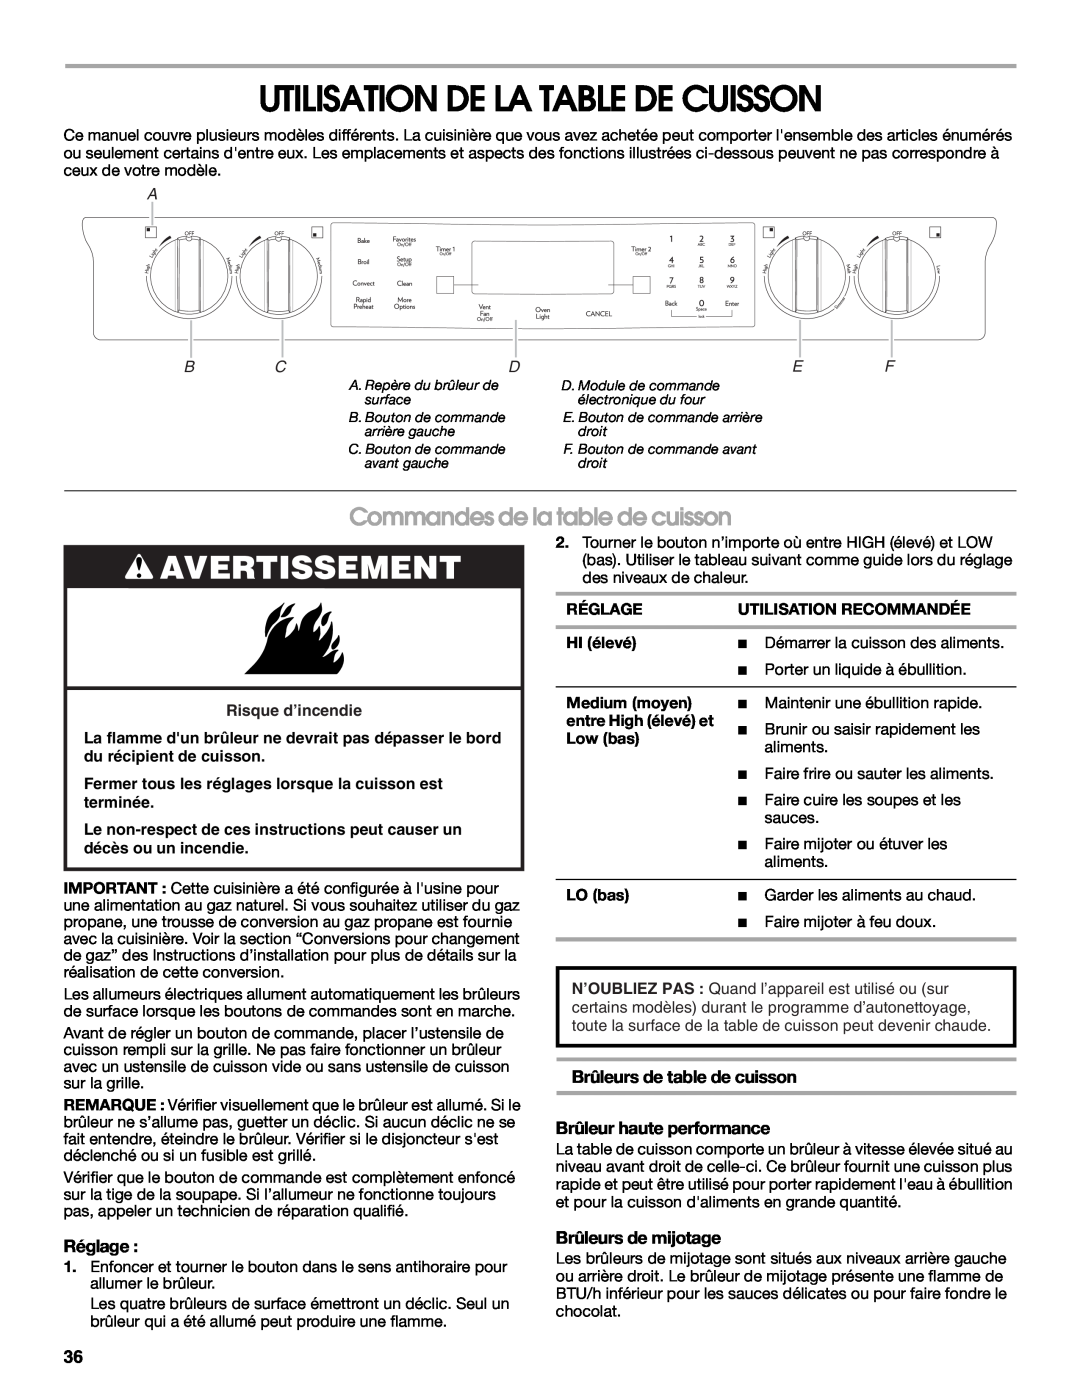 Jenn-Air JDS9865 manual Utilisation De La Table De Cuisson, Commandes de la table de cuisson, Avertissement, Réglage 